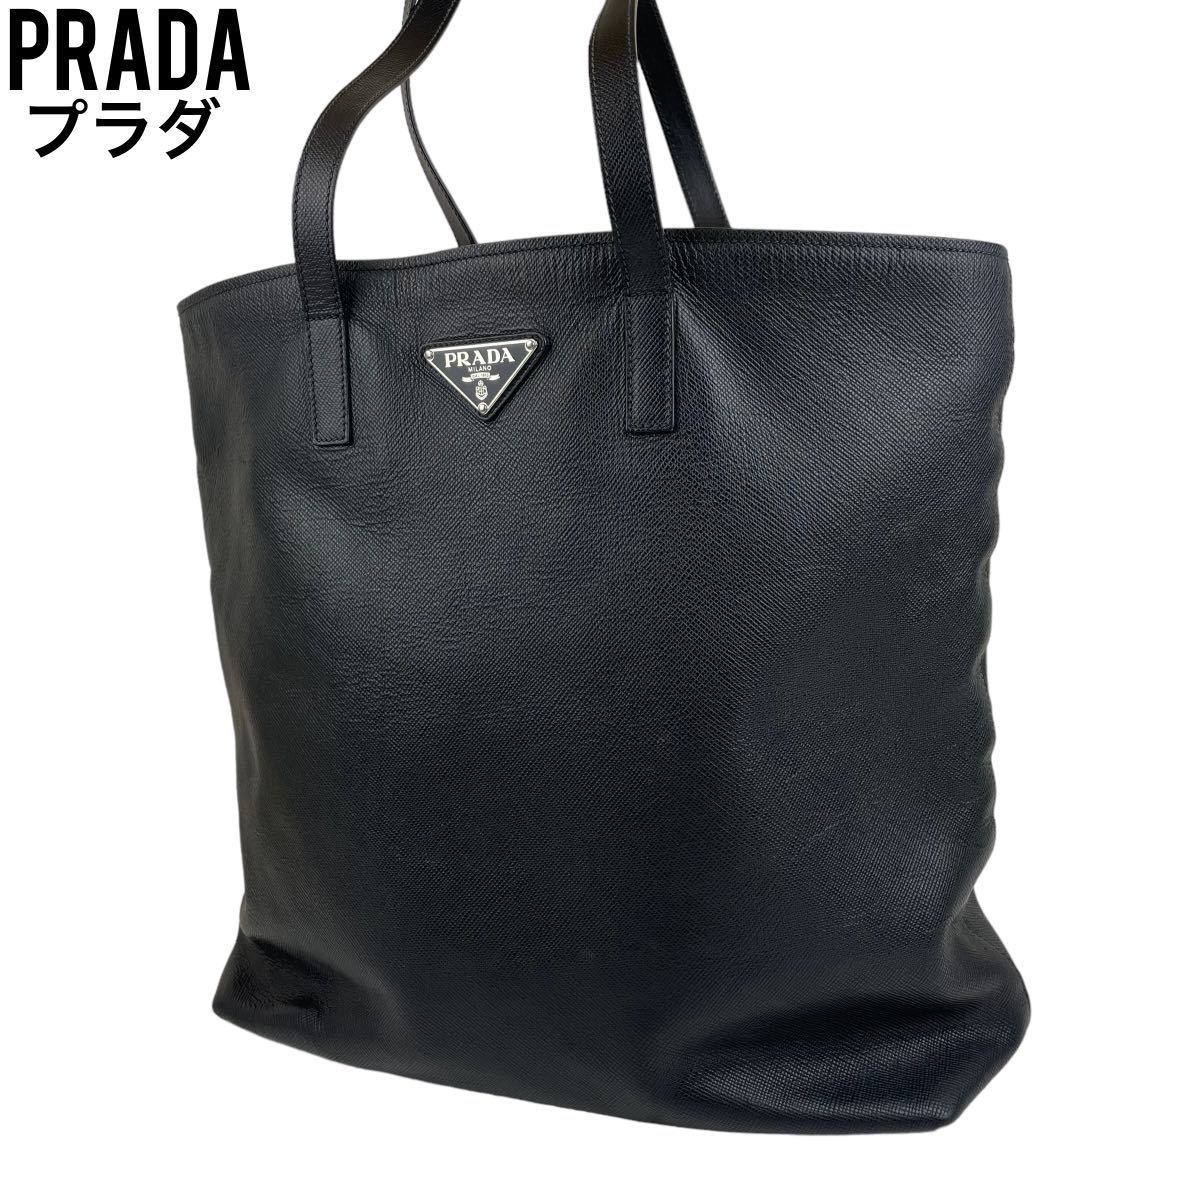 美品 PRADA プラダ トートバッグ オールレザー A4収納可 大容量 黒